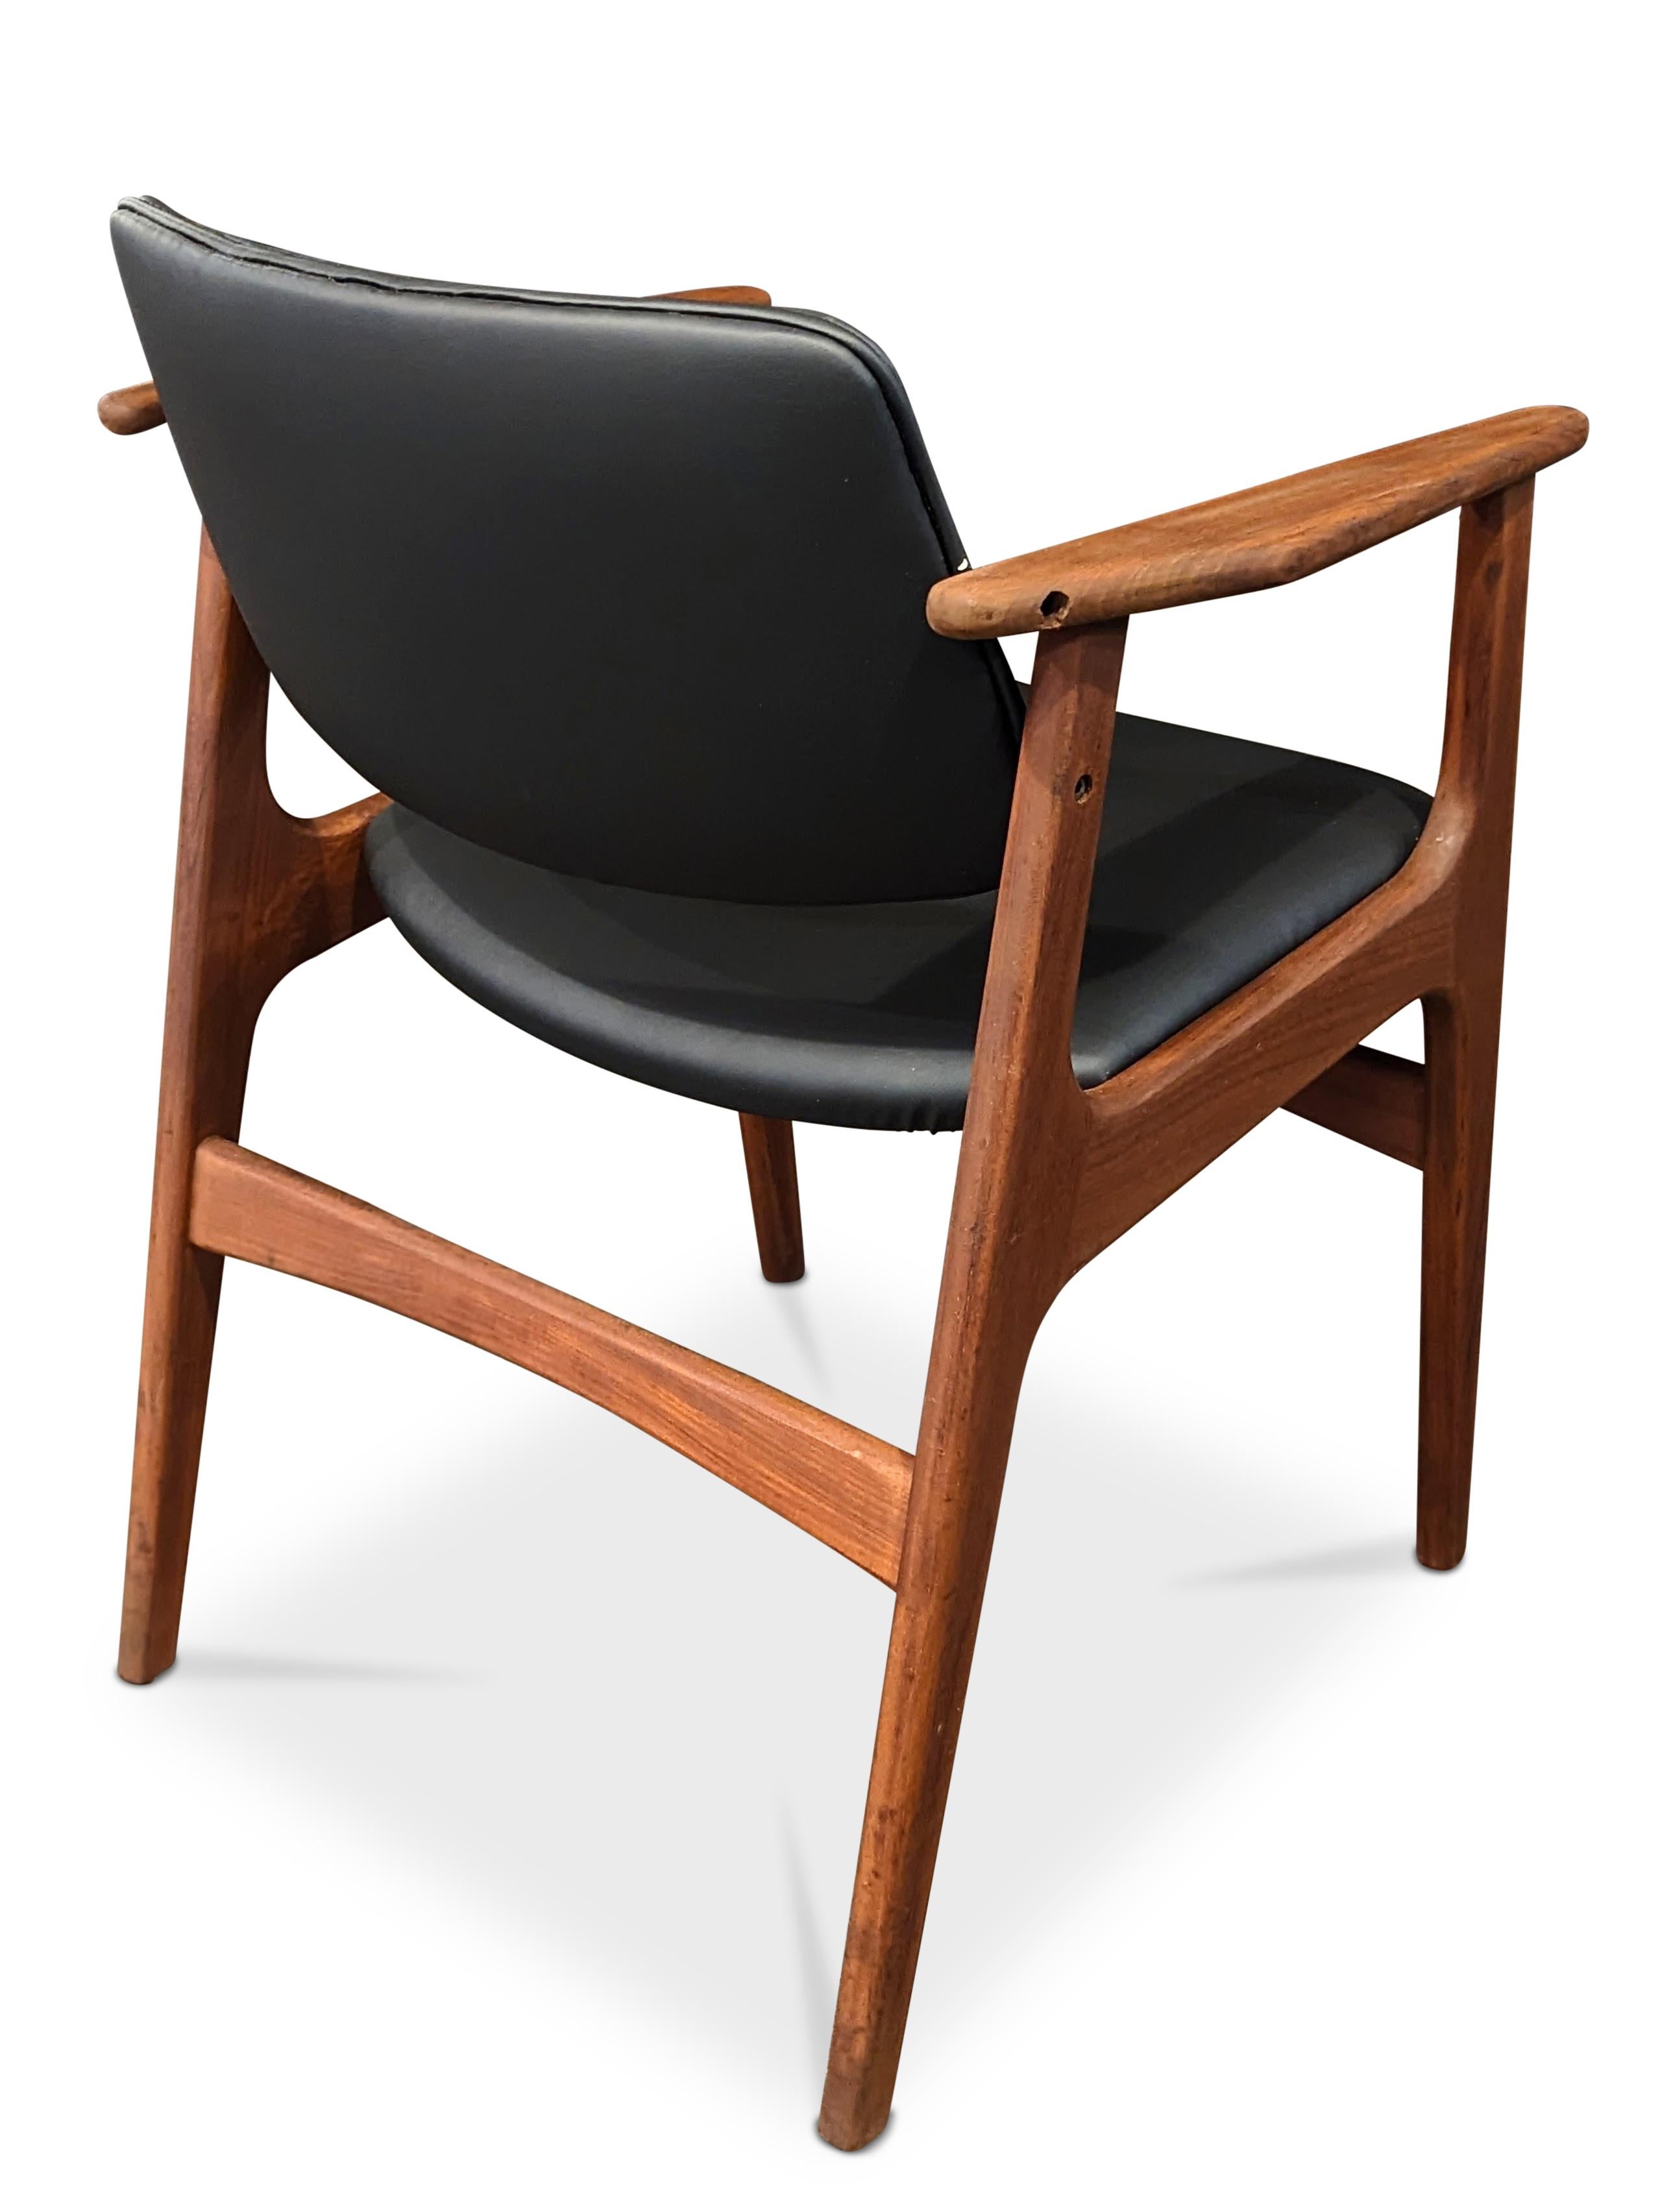 4 Arne Vodder Teak Arm Chairs - 072312 Vintage Danish Mid Century 1